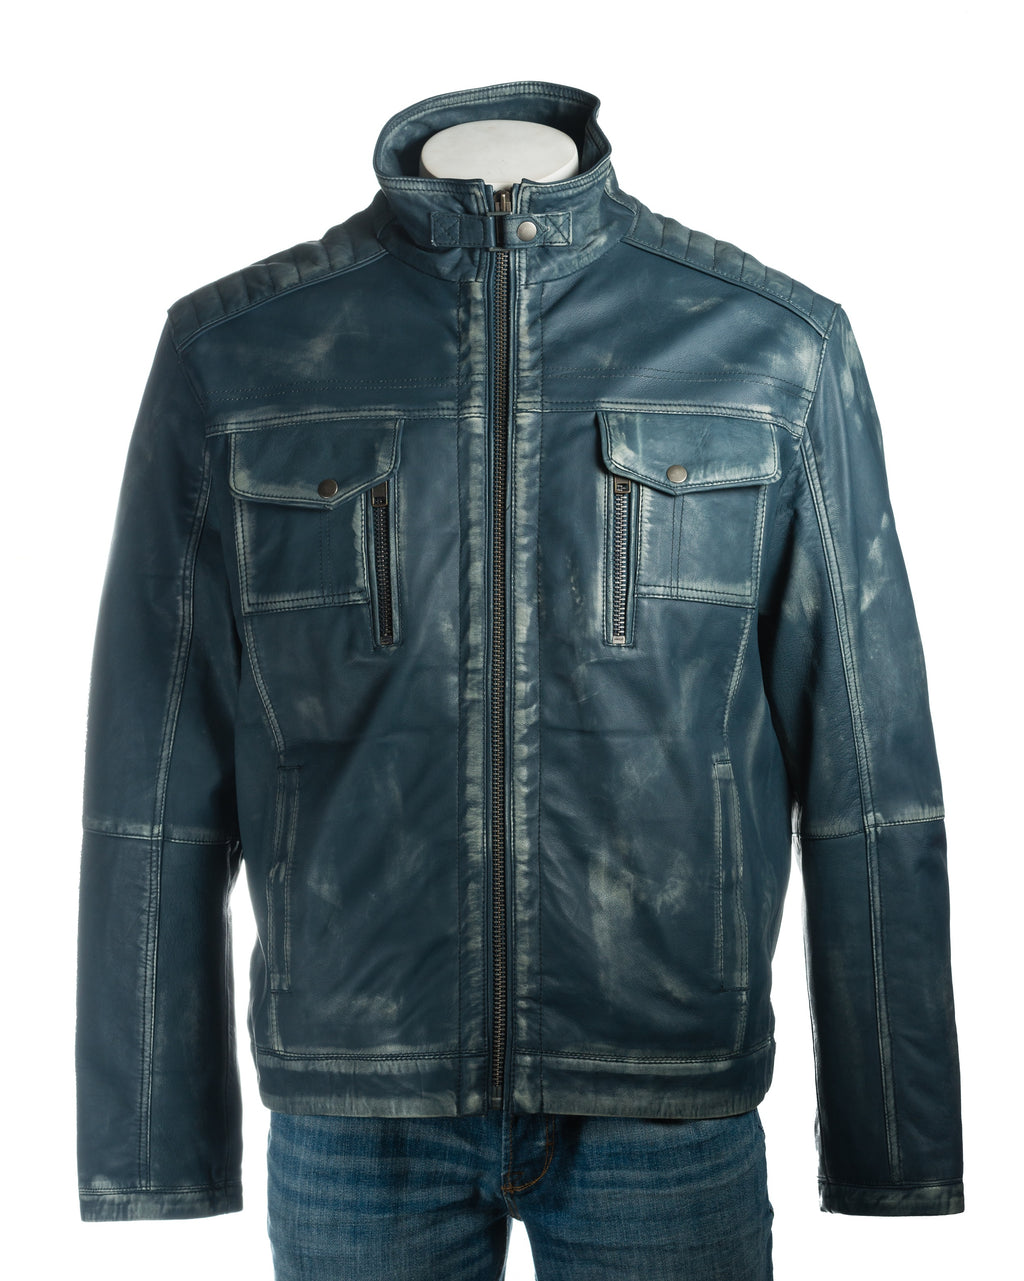 Men's Plus Size Antique Blue Vintage Biker Style Leather Jacket - Dominico